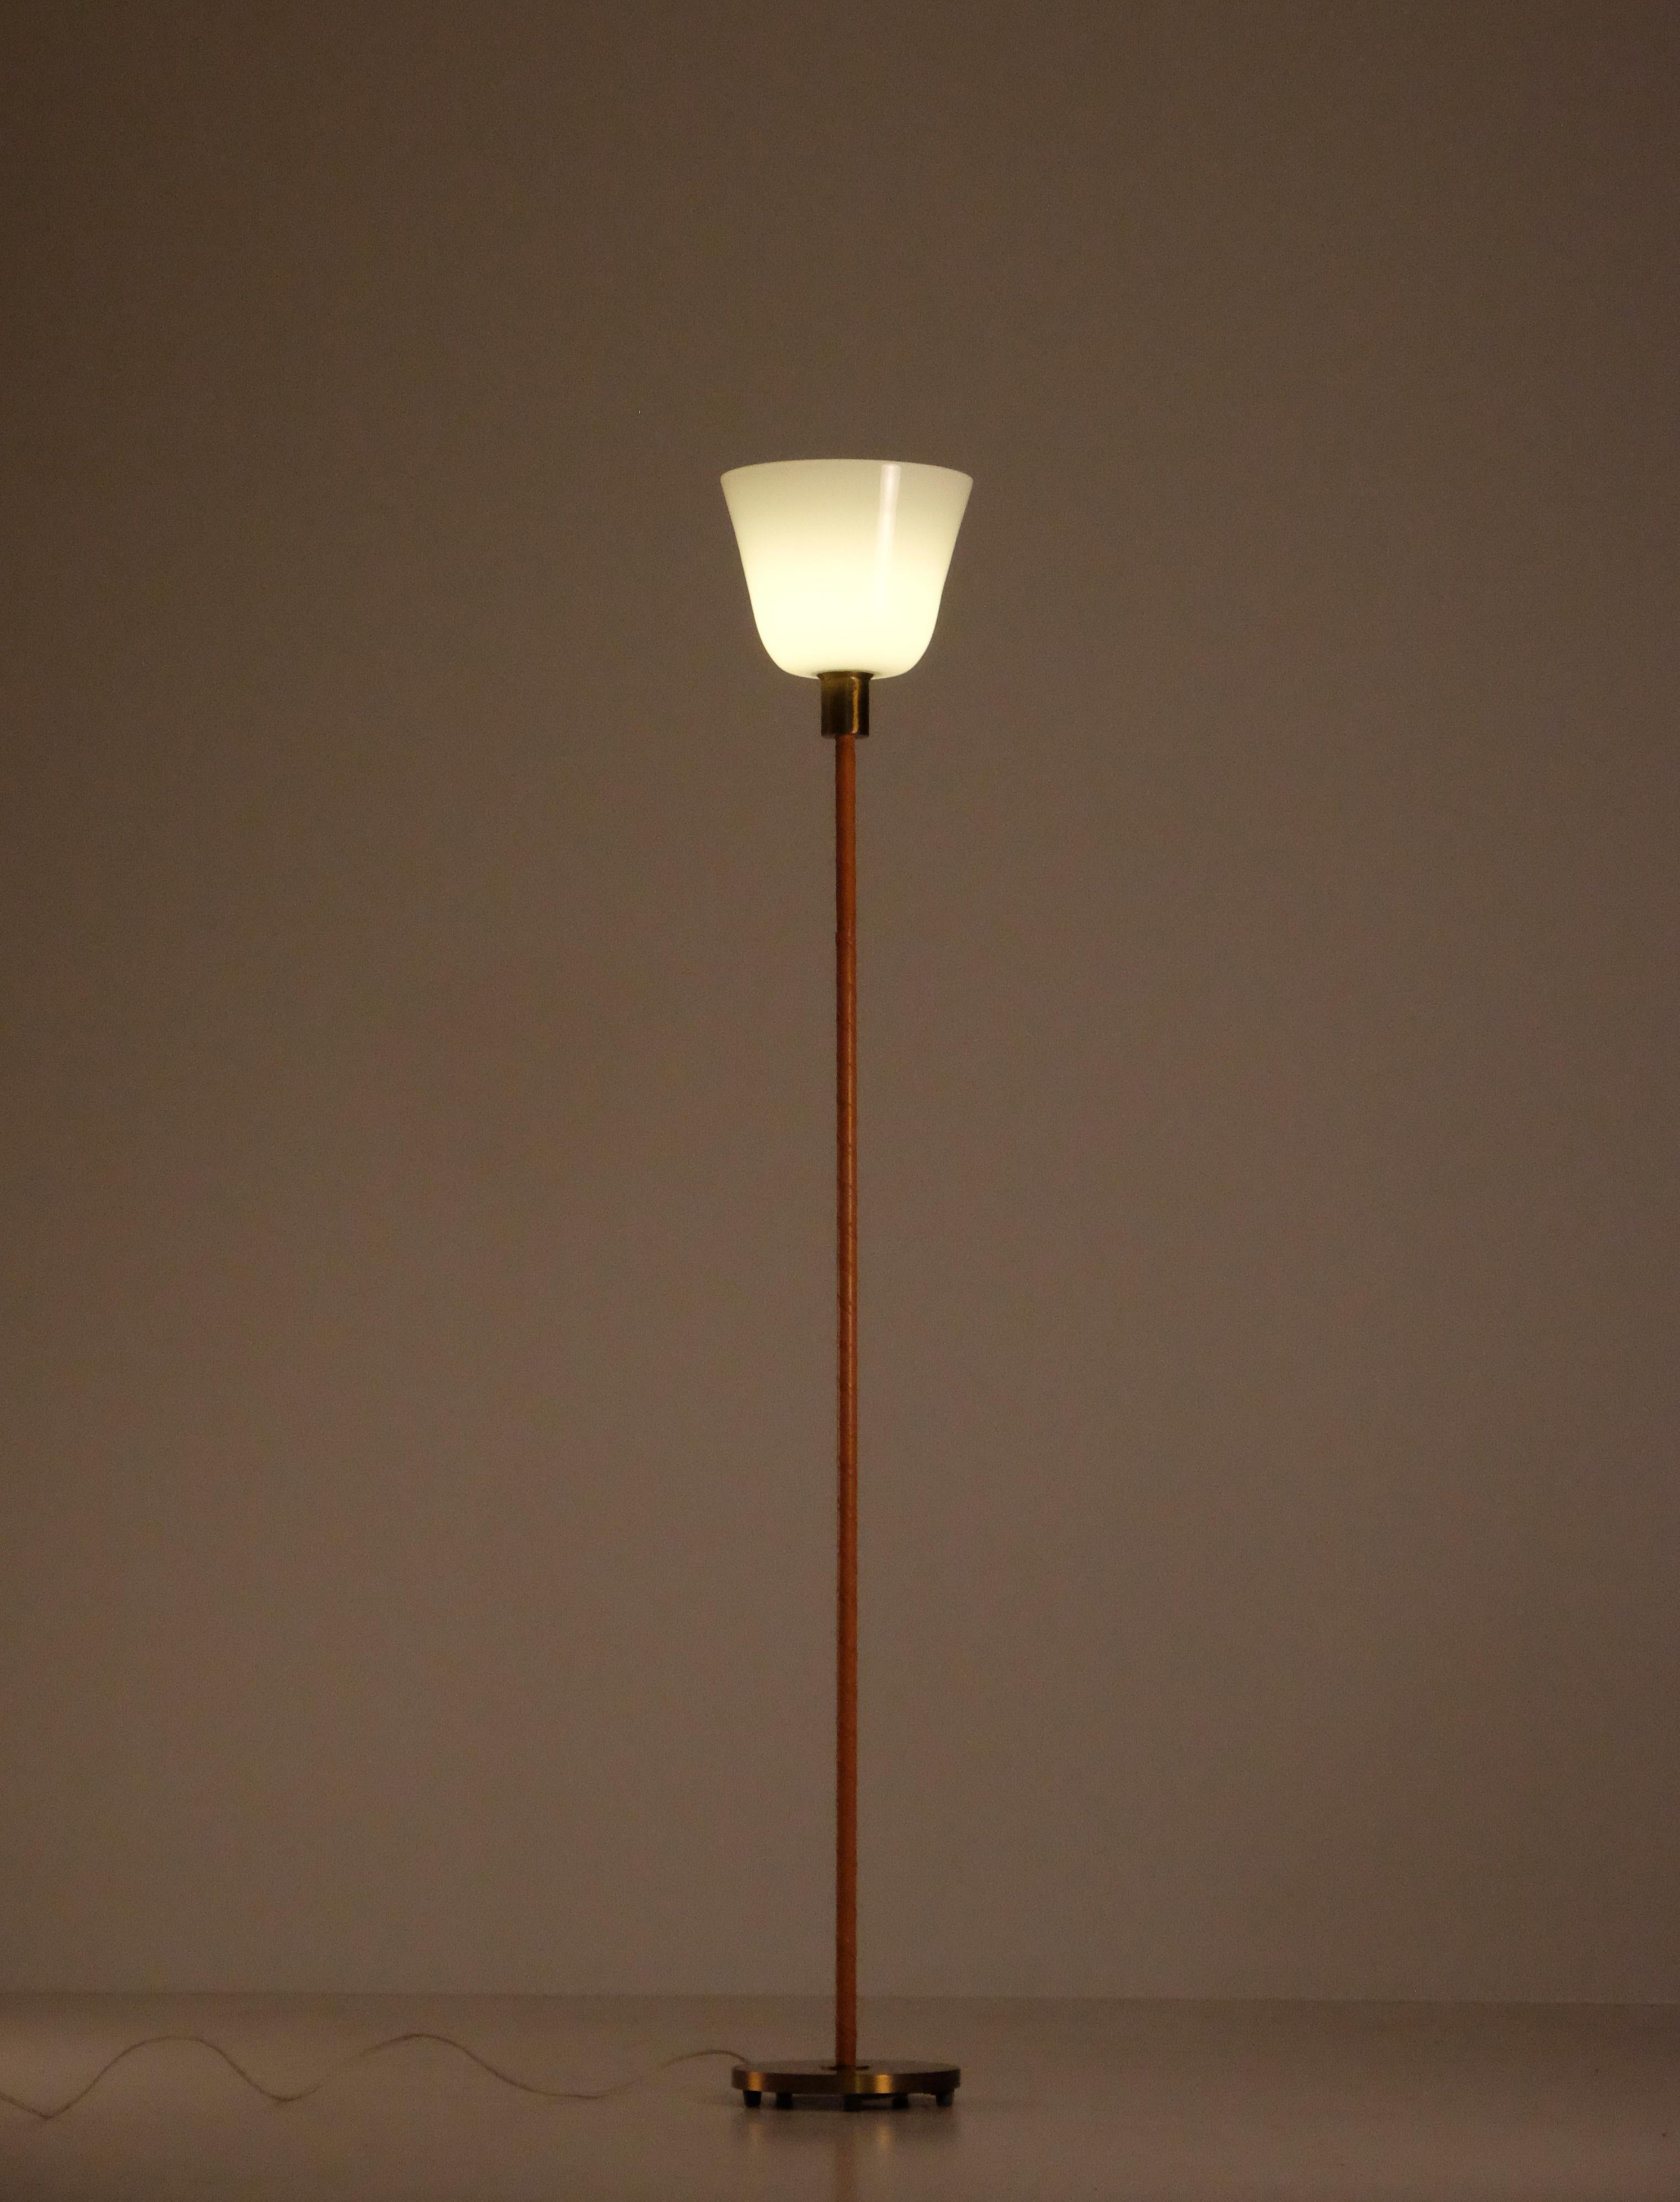 Luminaire en laiton, cuir et verre de Nordiska Kompaniet, années 1950.
Hauteur : 153 cm
Modèle : 32786